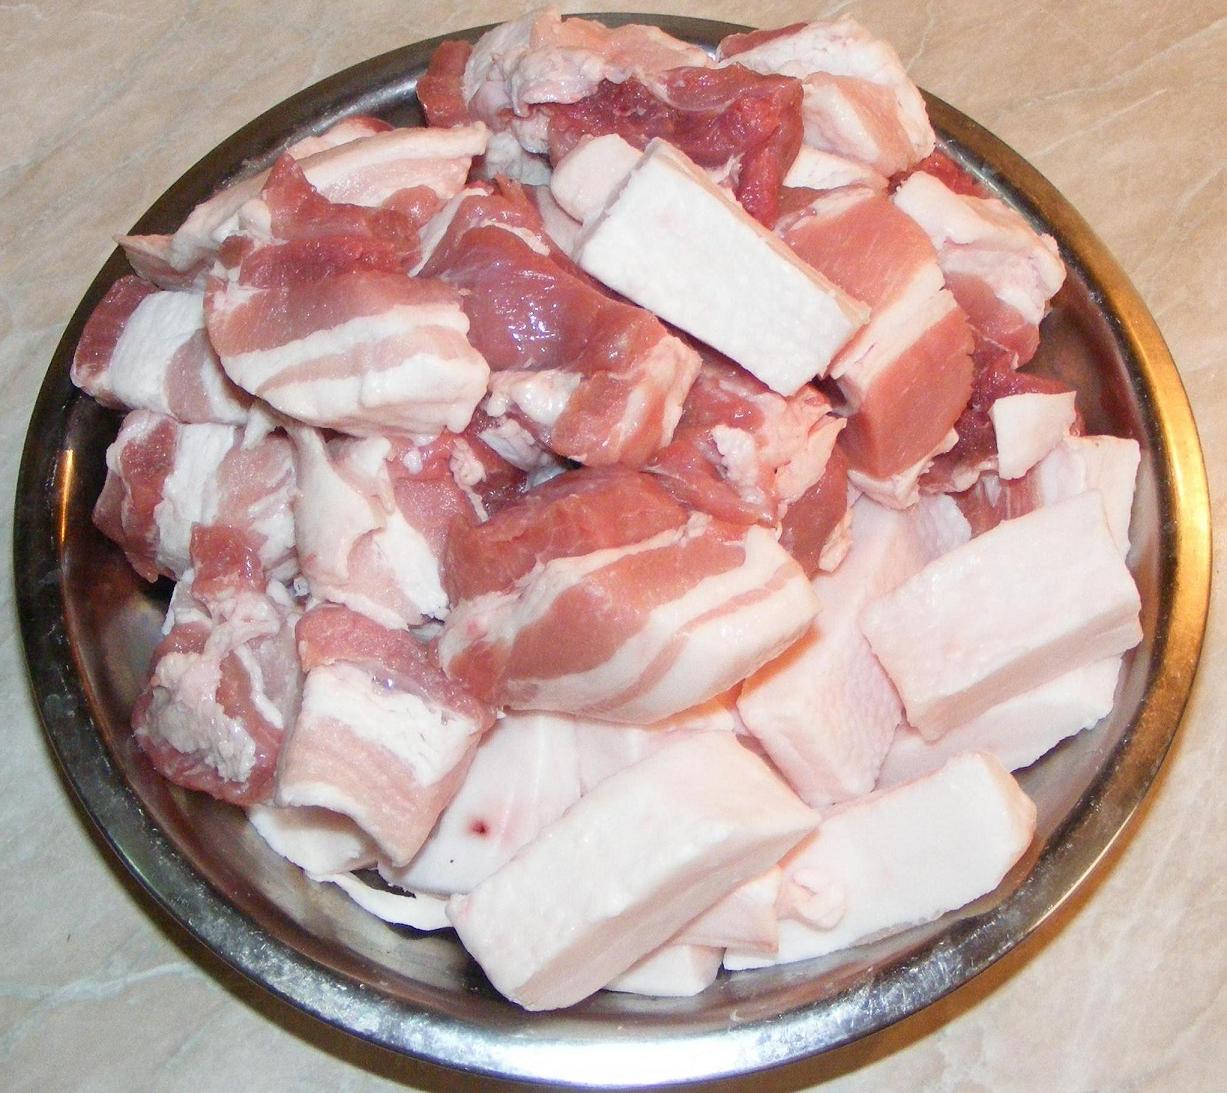 slimming w carne de porc)